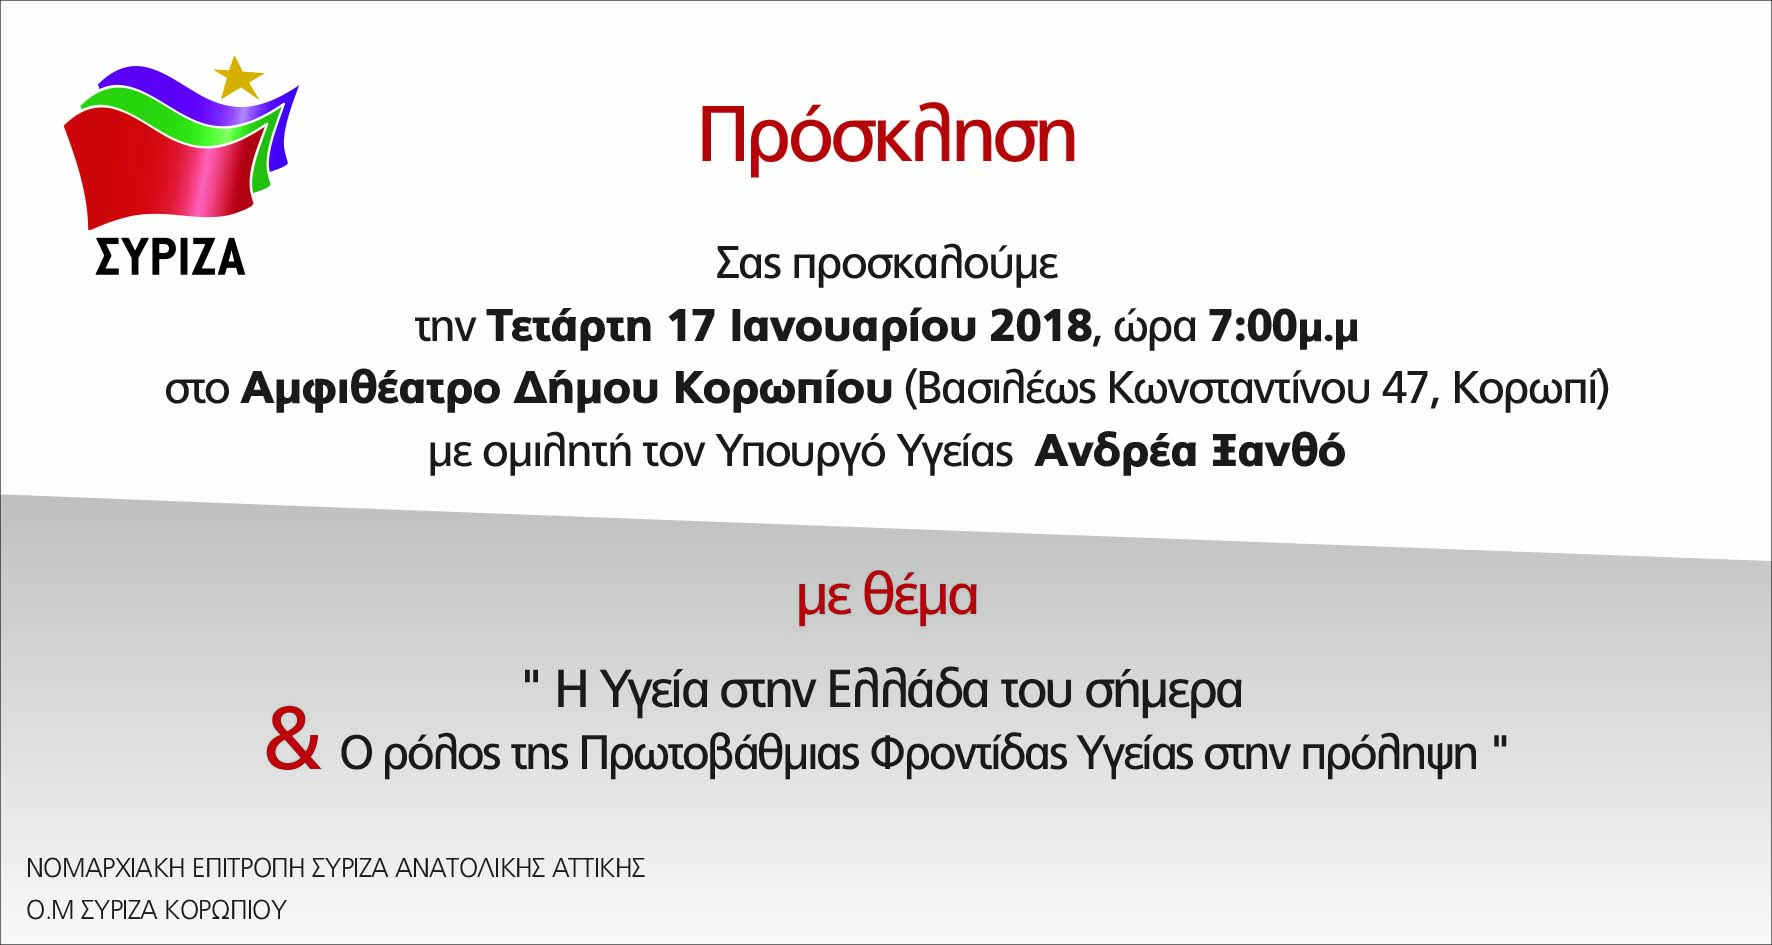 Ανοιχτή πολιτική εκδήλωση της Ν.Ε. Ανατολικής Αττικής και της ΟΜ Κορωπίου του ΣΥΡΙΖΑ με ομιλητή τον υπουργό Υγείας Ανδρέα Ξανθό